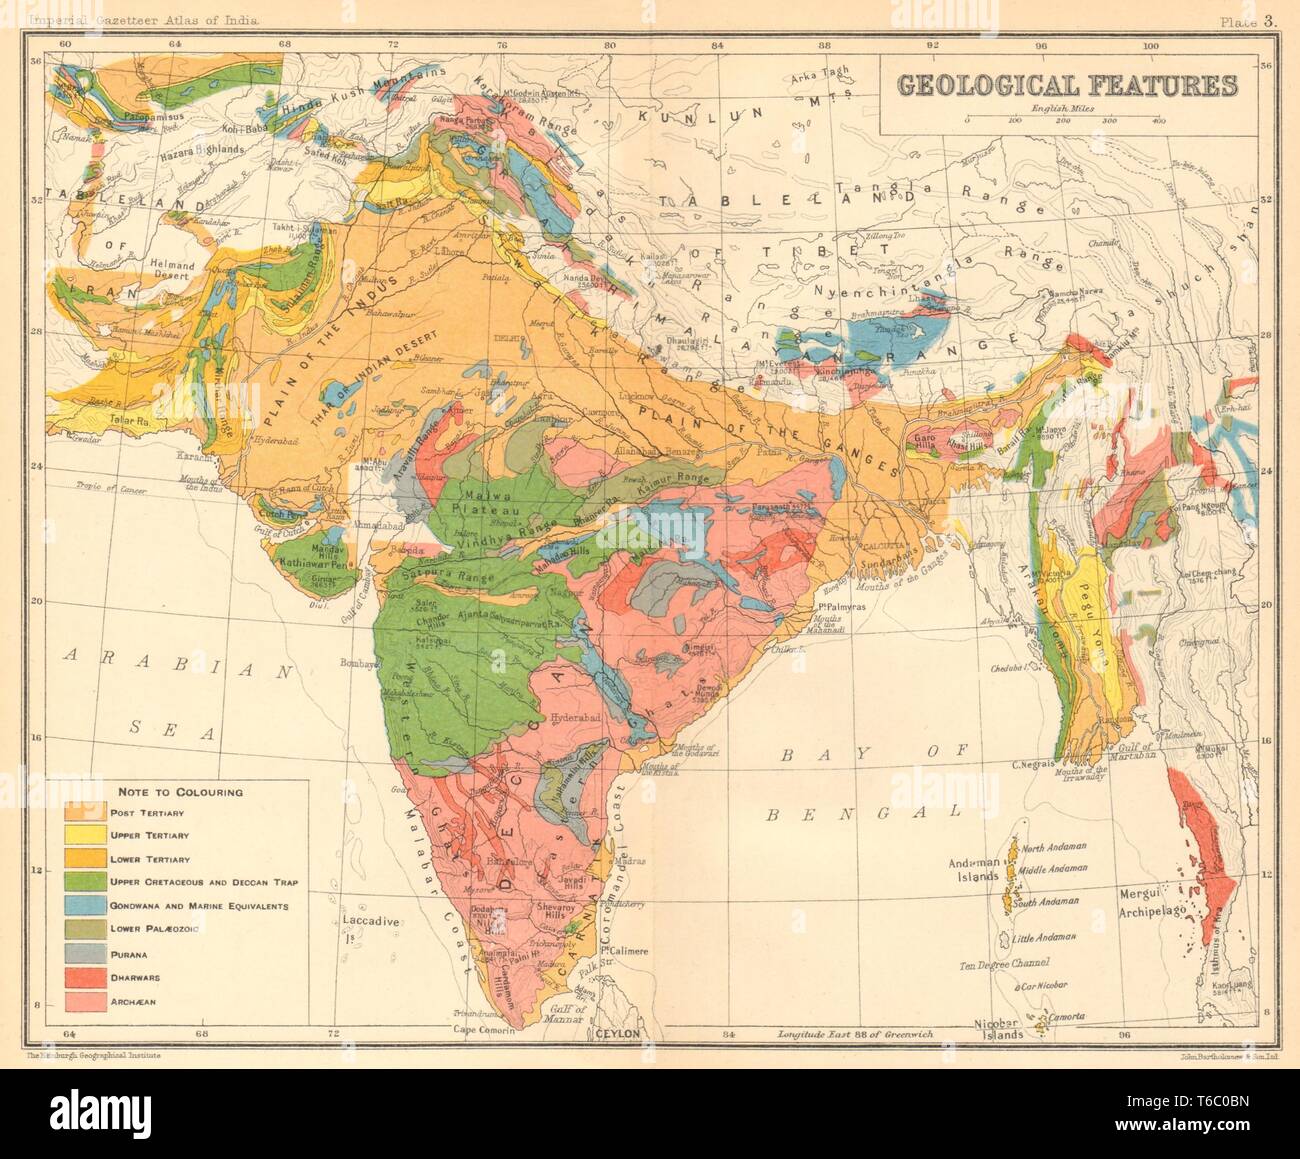 Mapa geológico de la India británica. Cretáceo terciario Archaean Purana Gondwana 1931 Foto de stock